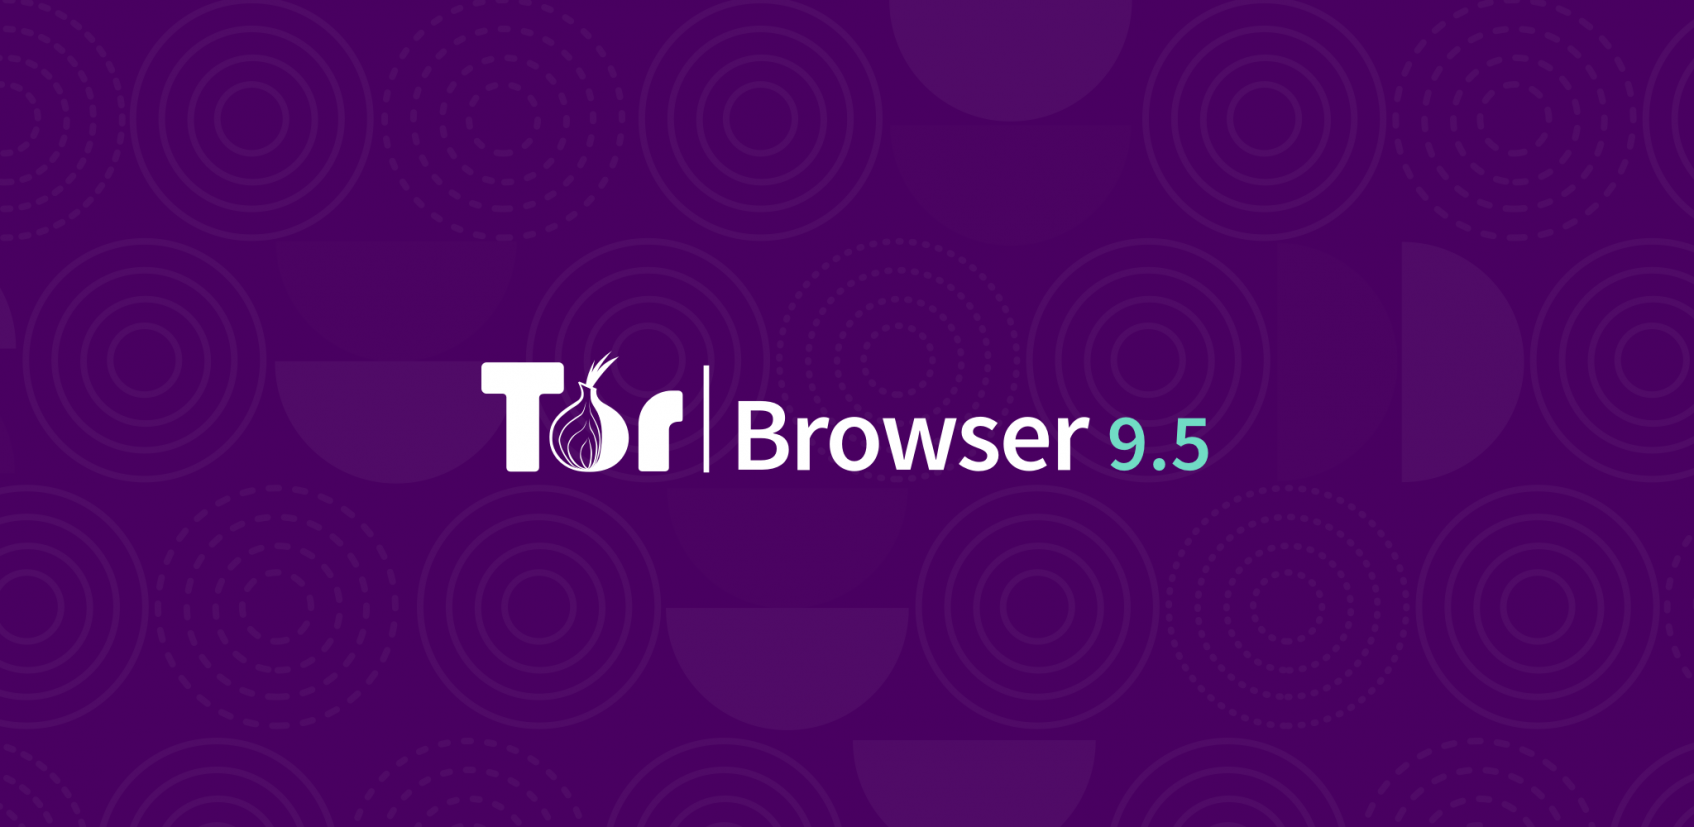 Browser tor project gydra браузер тор долго грузит hyrda вход